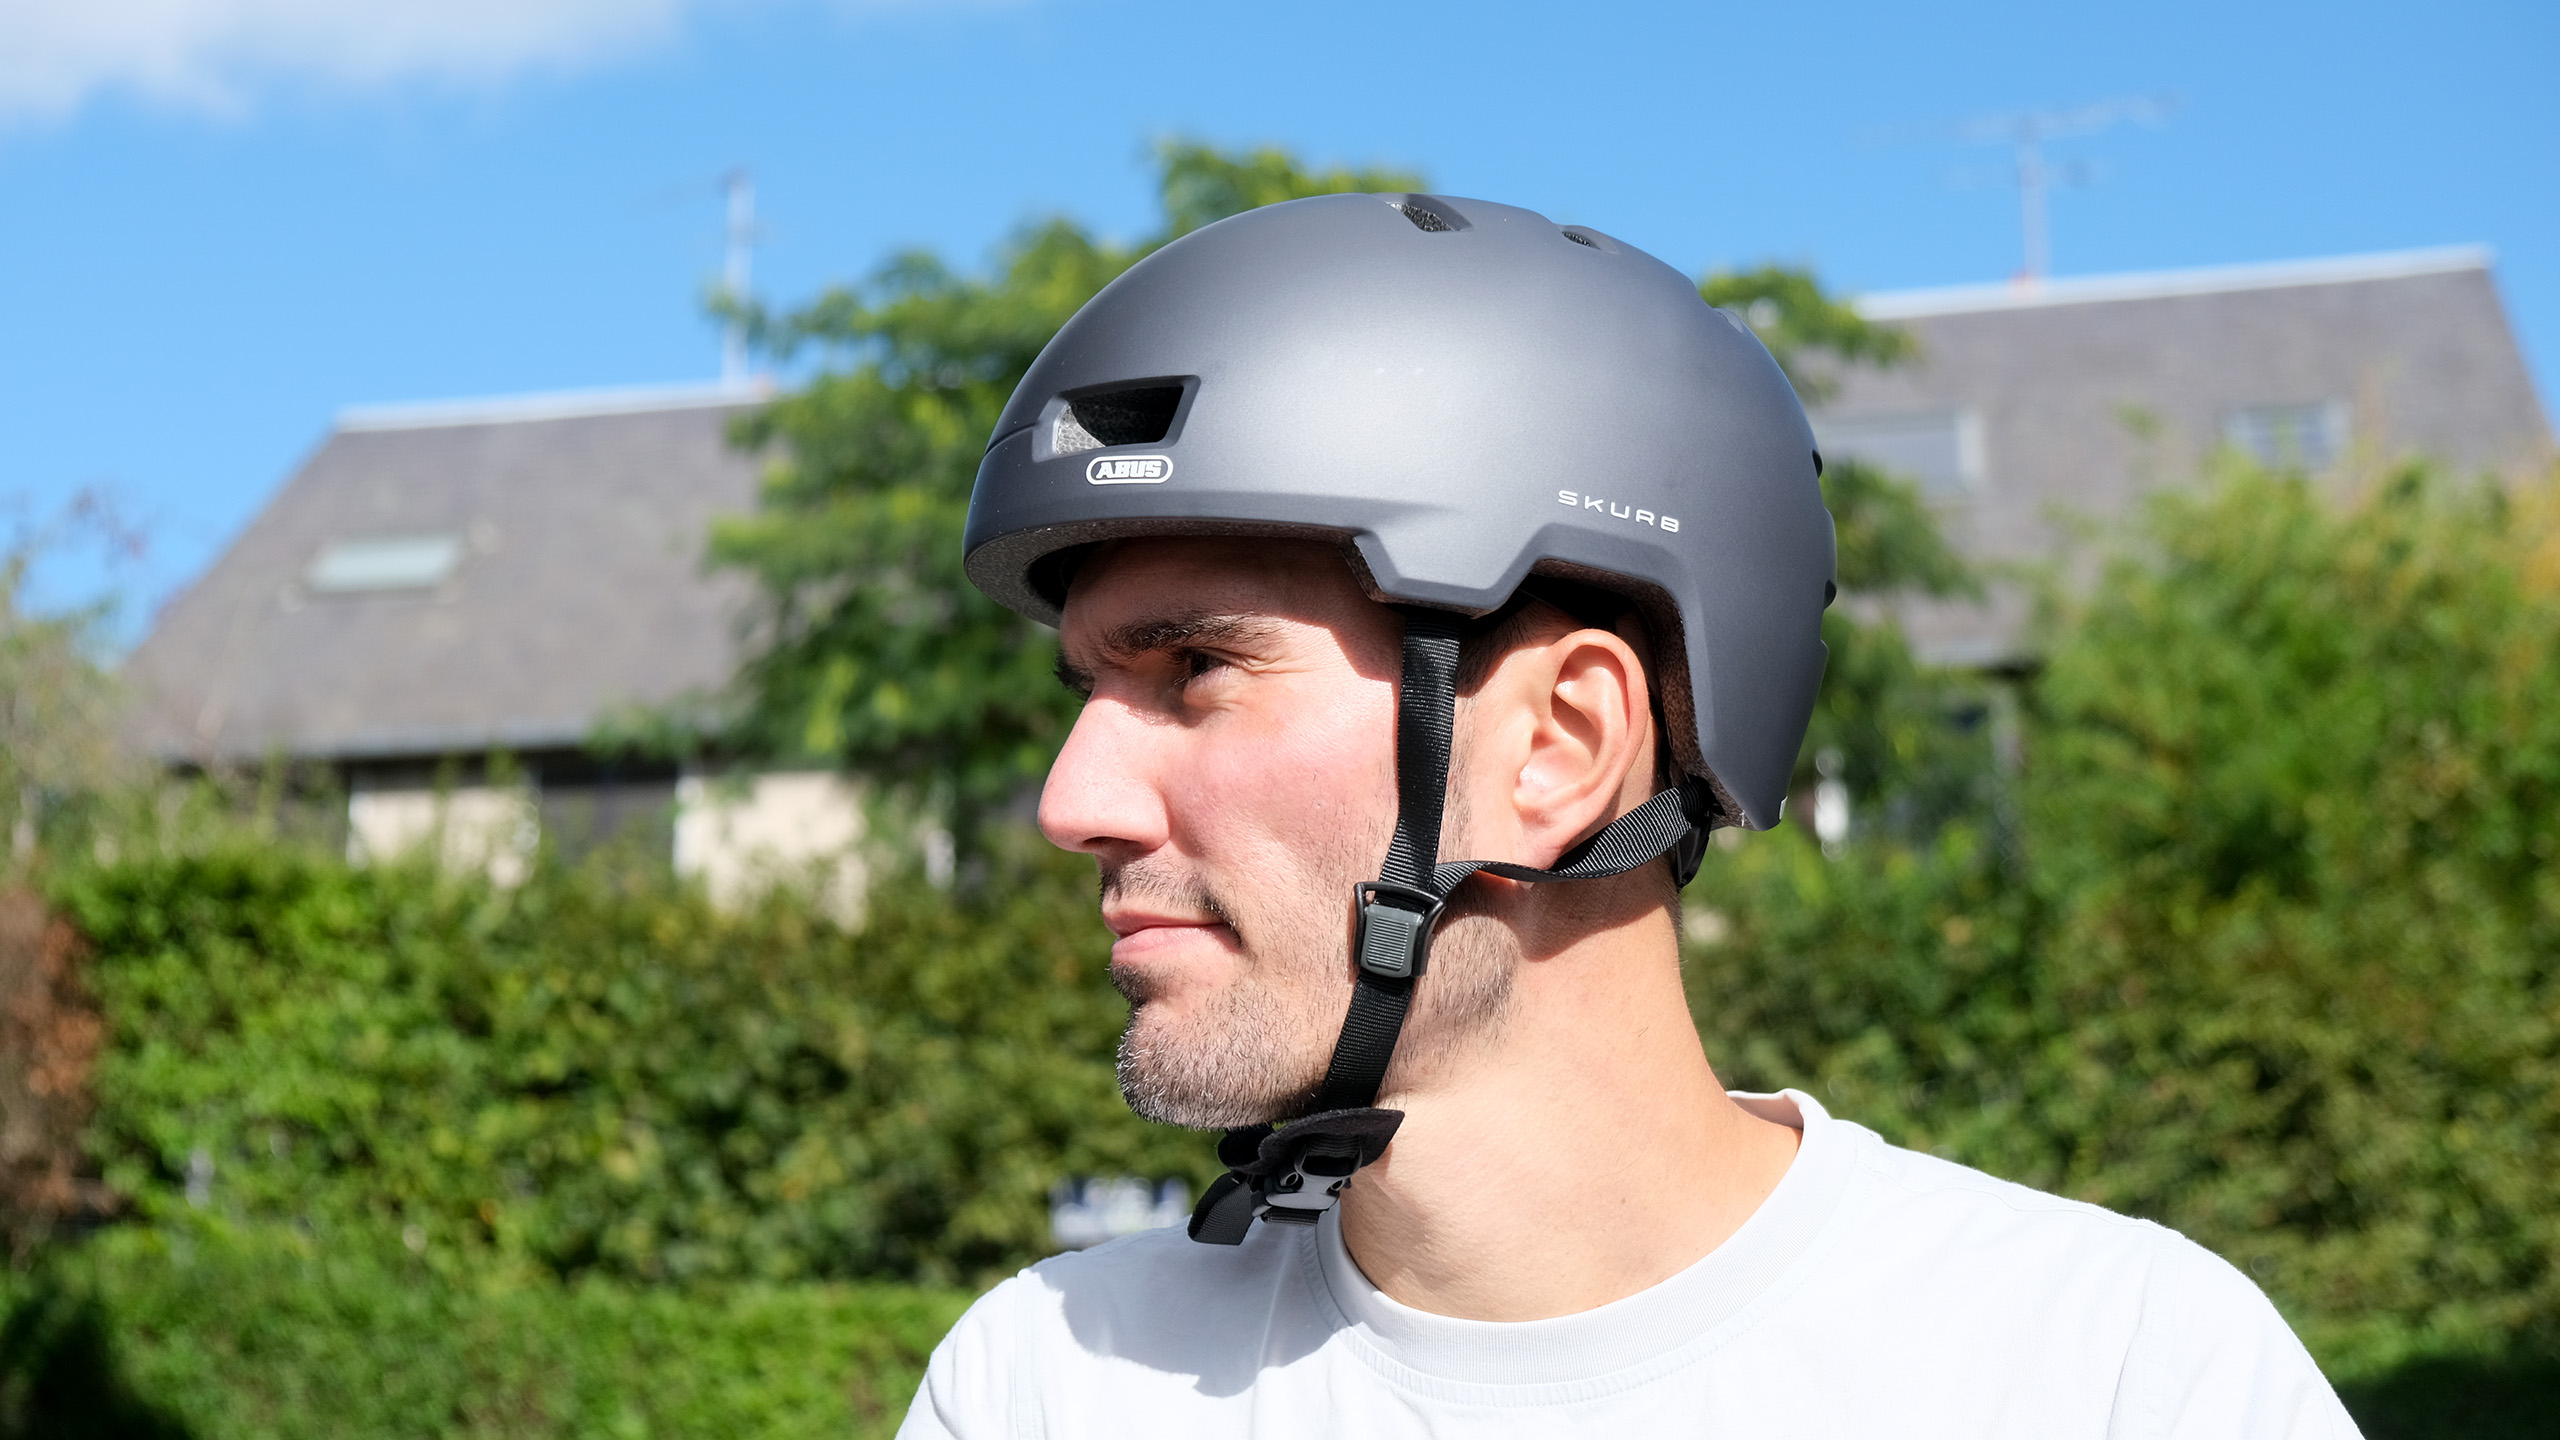 Test – Abus Skurb, le casque de vélo urbain façon skateboard à